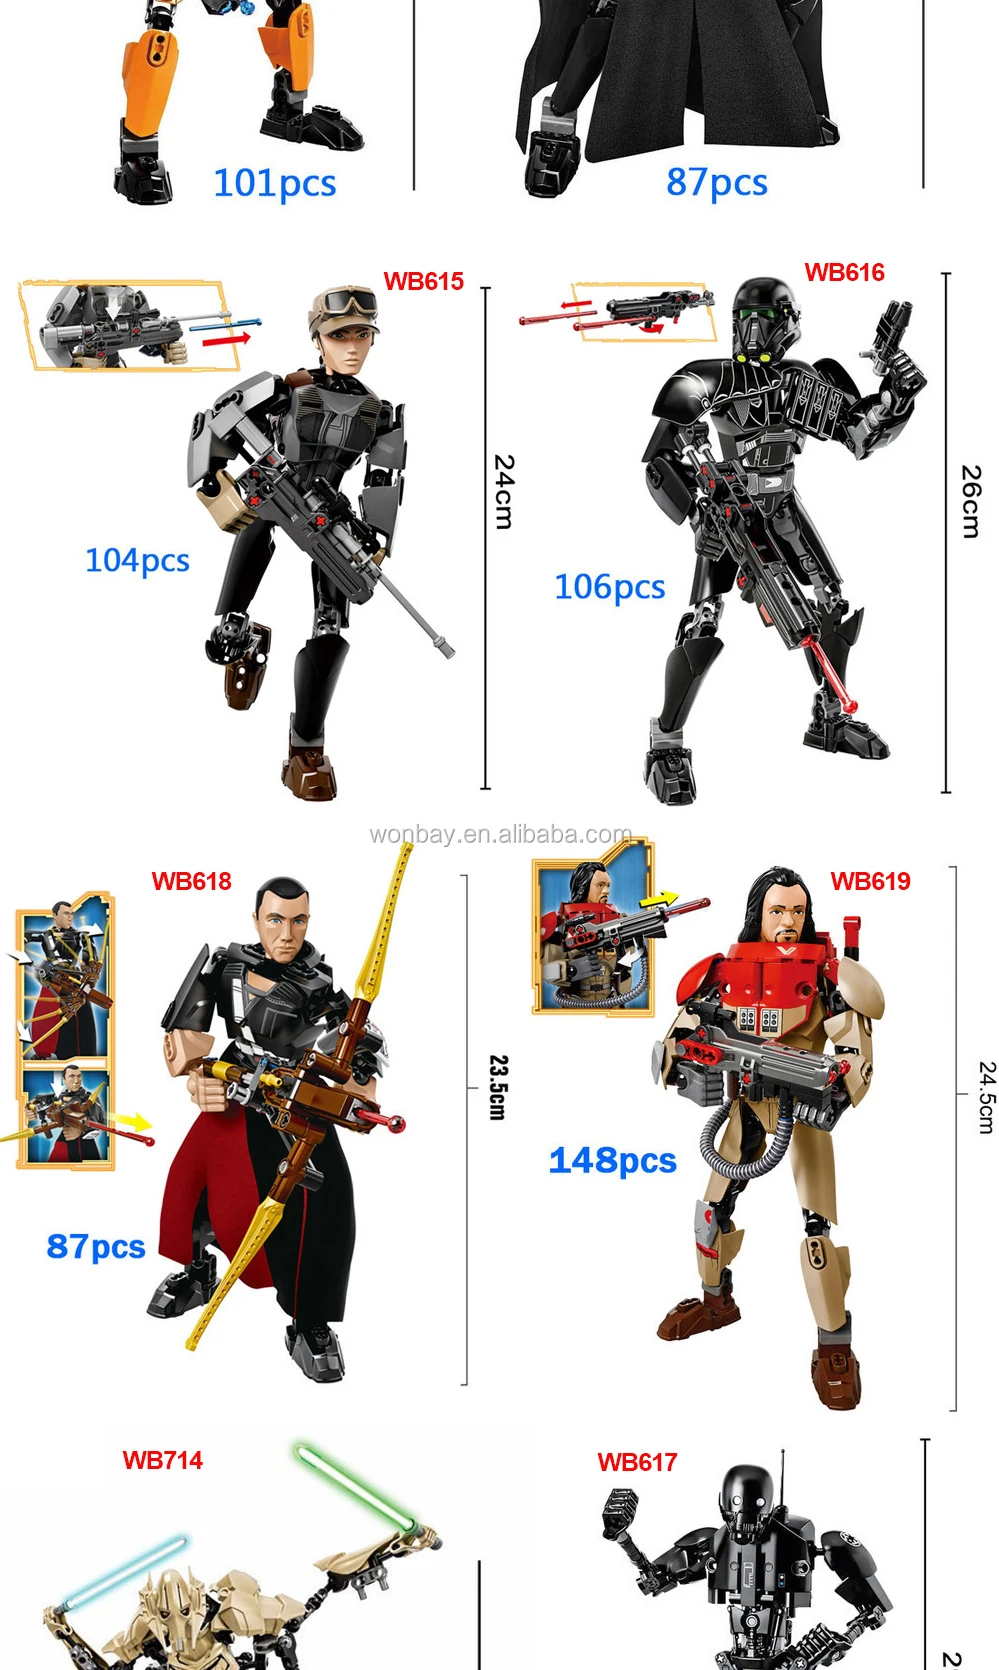 Details about   518PCS MOC Sky High Battle Building Blocks Bricks Toy Model Figures